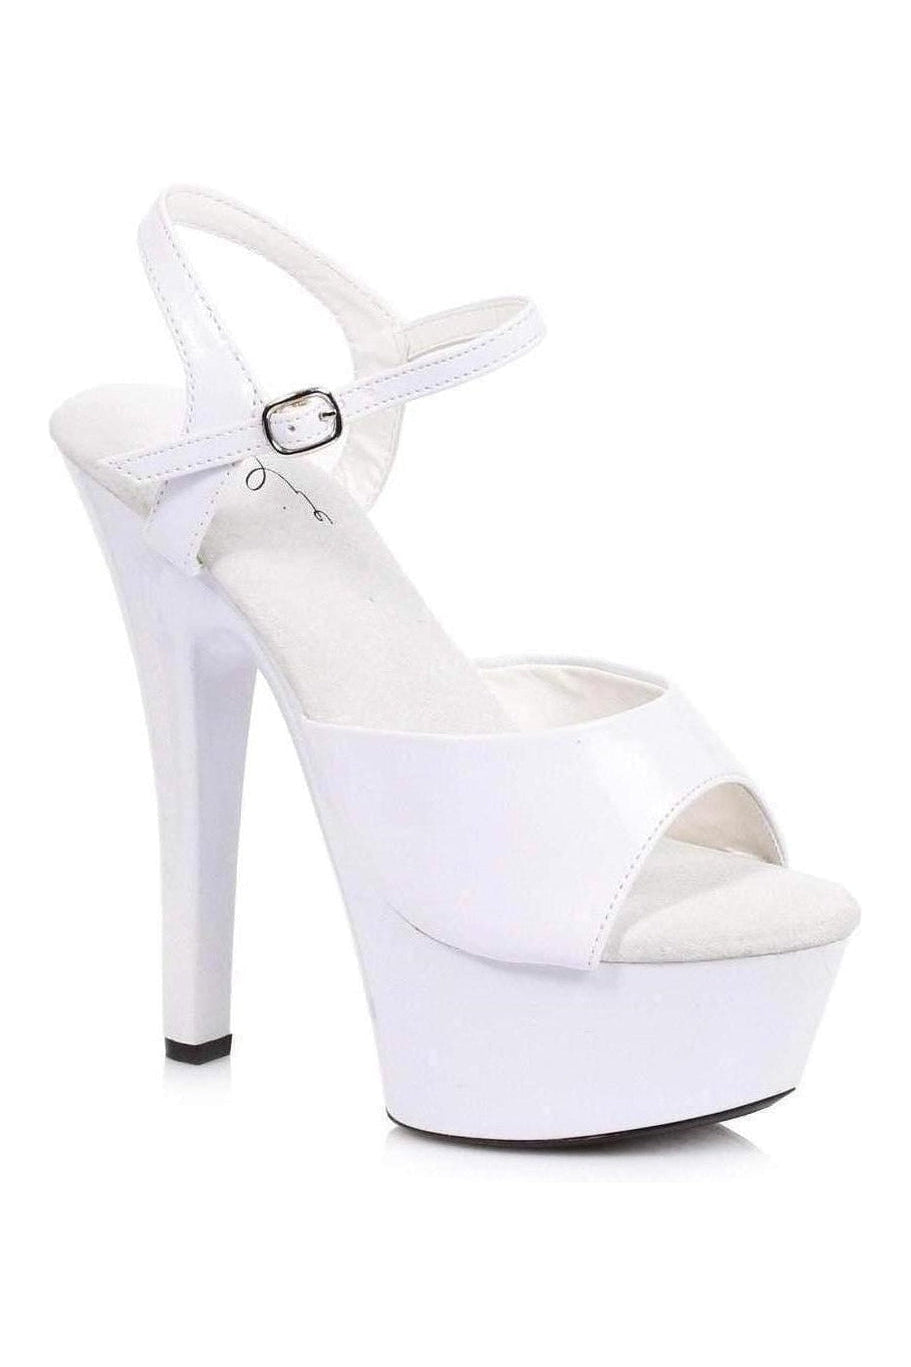 601-JULIET Platform Sandal | White Patent-Ellie Shoes-White-Sandals-SEXYSHOES.COM